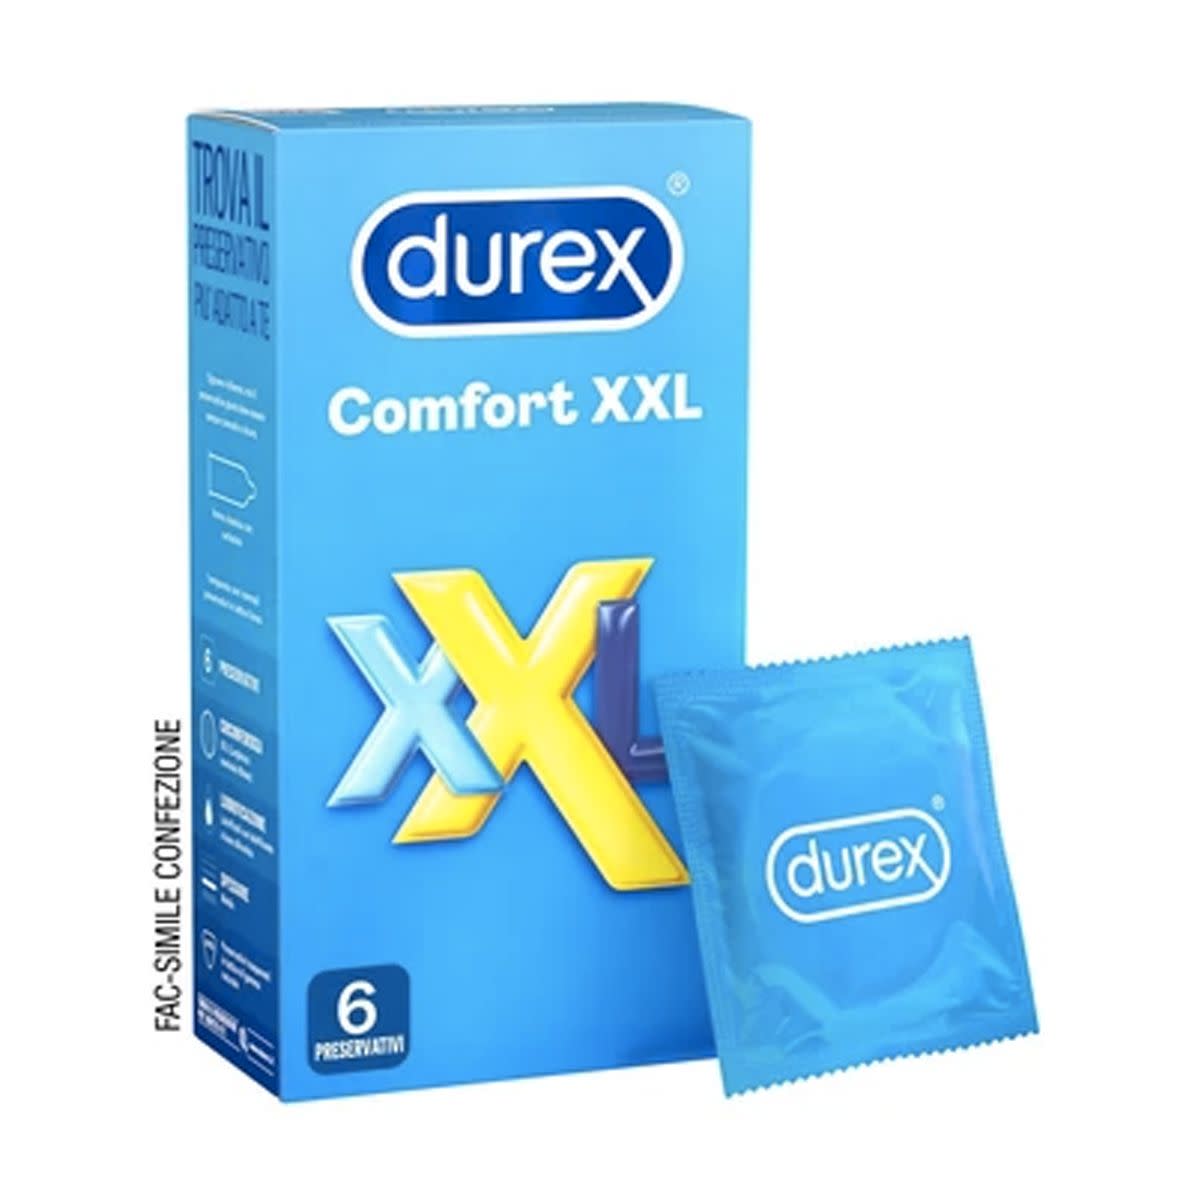 980408215 - Durex Comfort Xxl profilattici 6 pezzi - 4710800_2.jpg